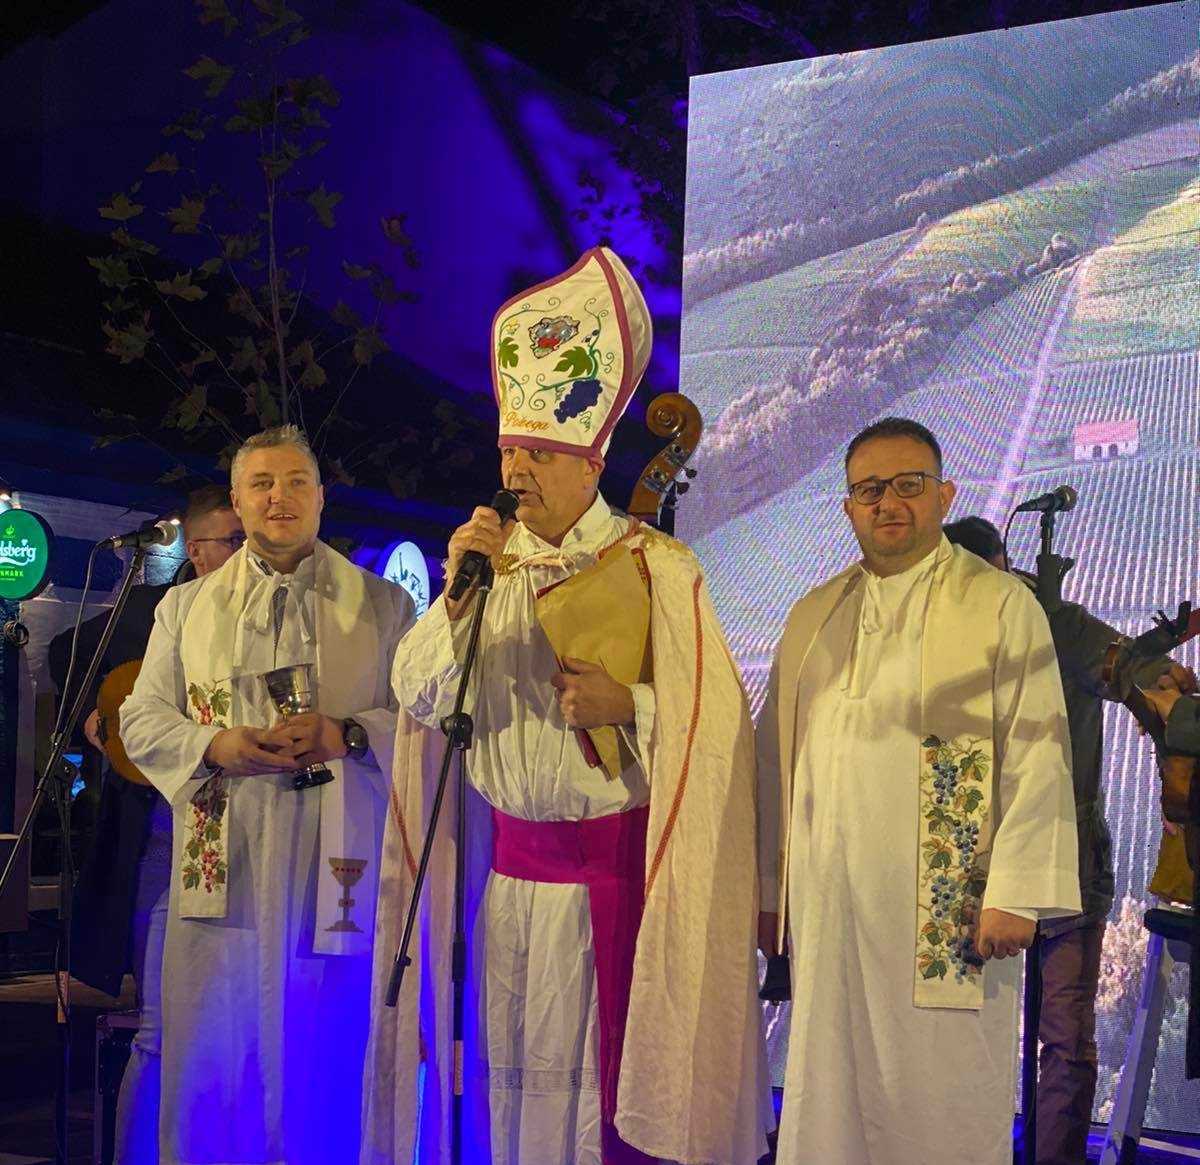 Vinski biskup Igor Kovačević, ministranti Leo Pandžić i Josip Matković na Martinju Crne Gore